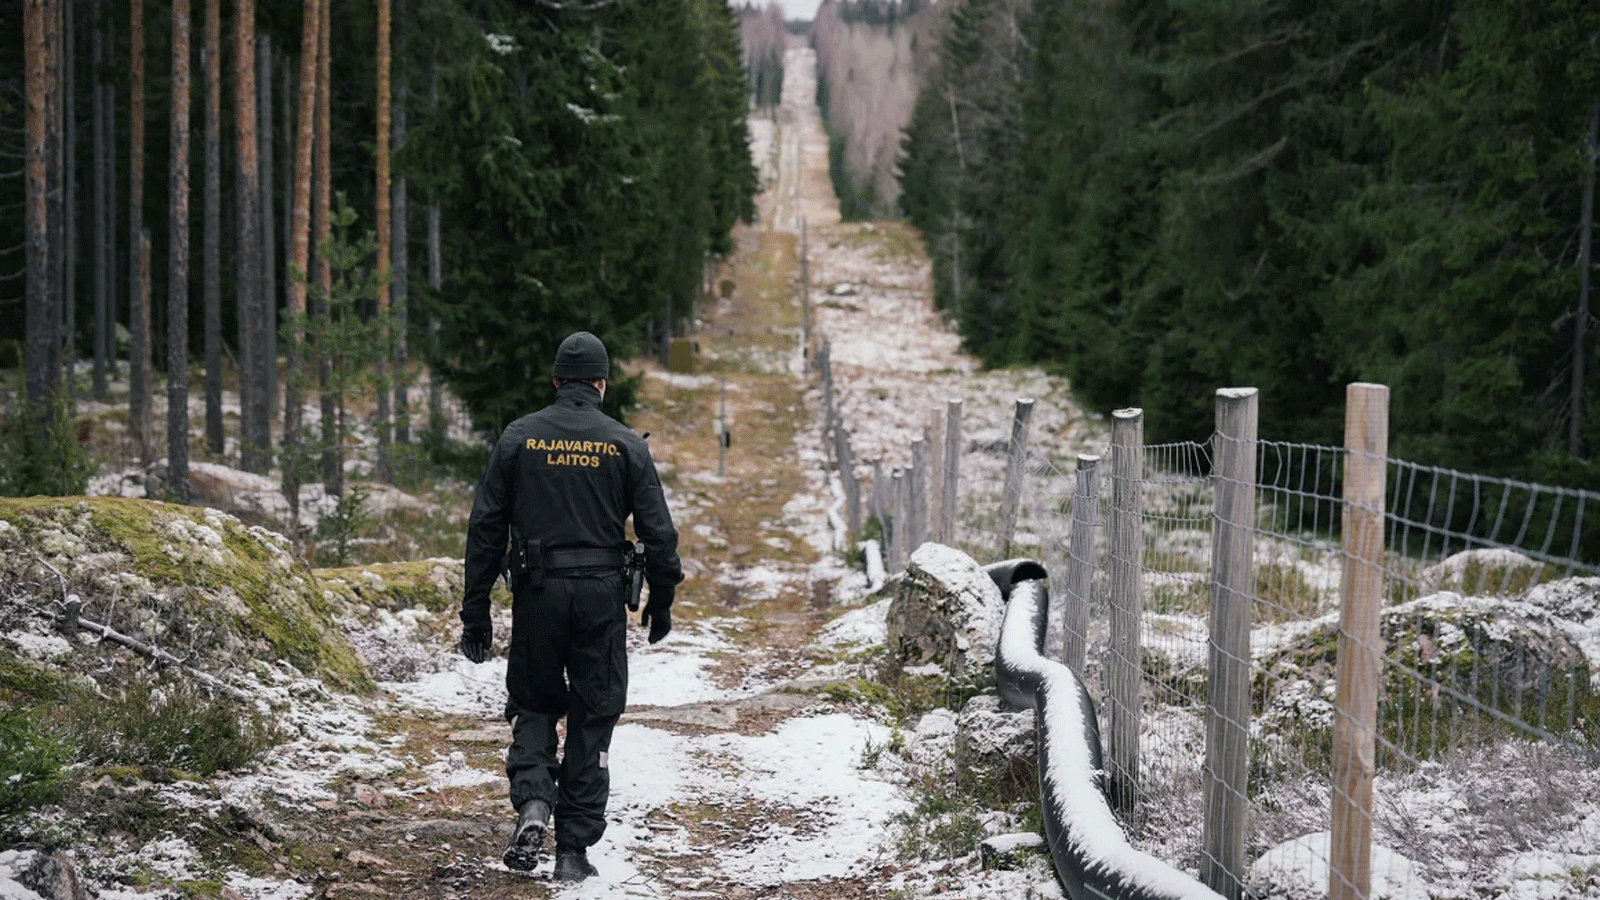 ضابط كبير في حرس الحدود يوهو بيلينين يسير على طول السياج الذي يحدد المنطقة الحدودية بين فنلندا وروسيا بالقرب من معبر بيلكولا الحدودي في إيماترا بفنلندا